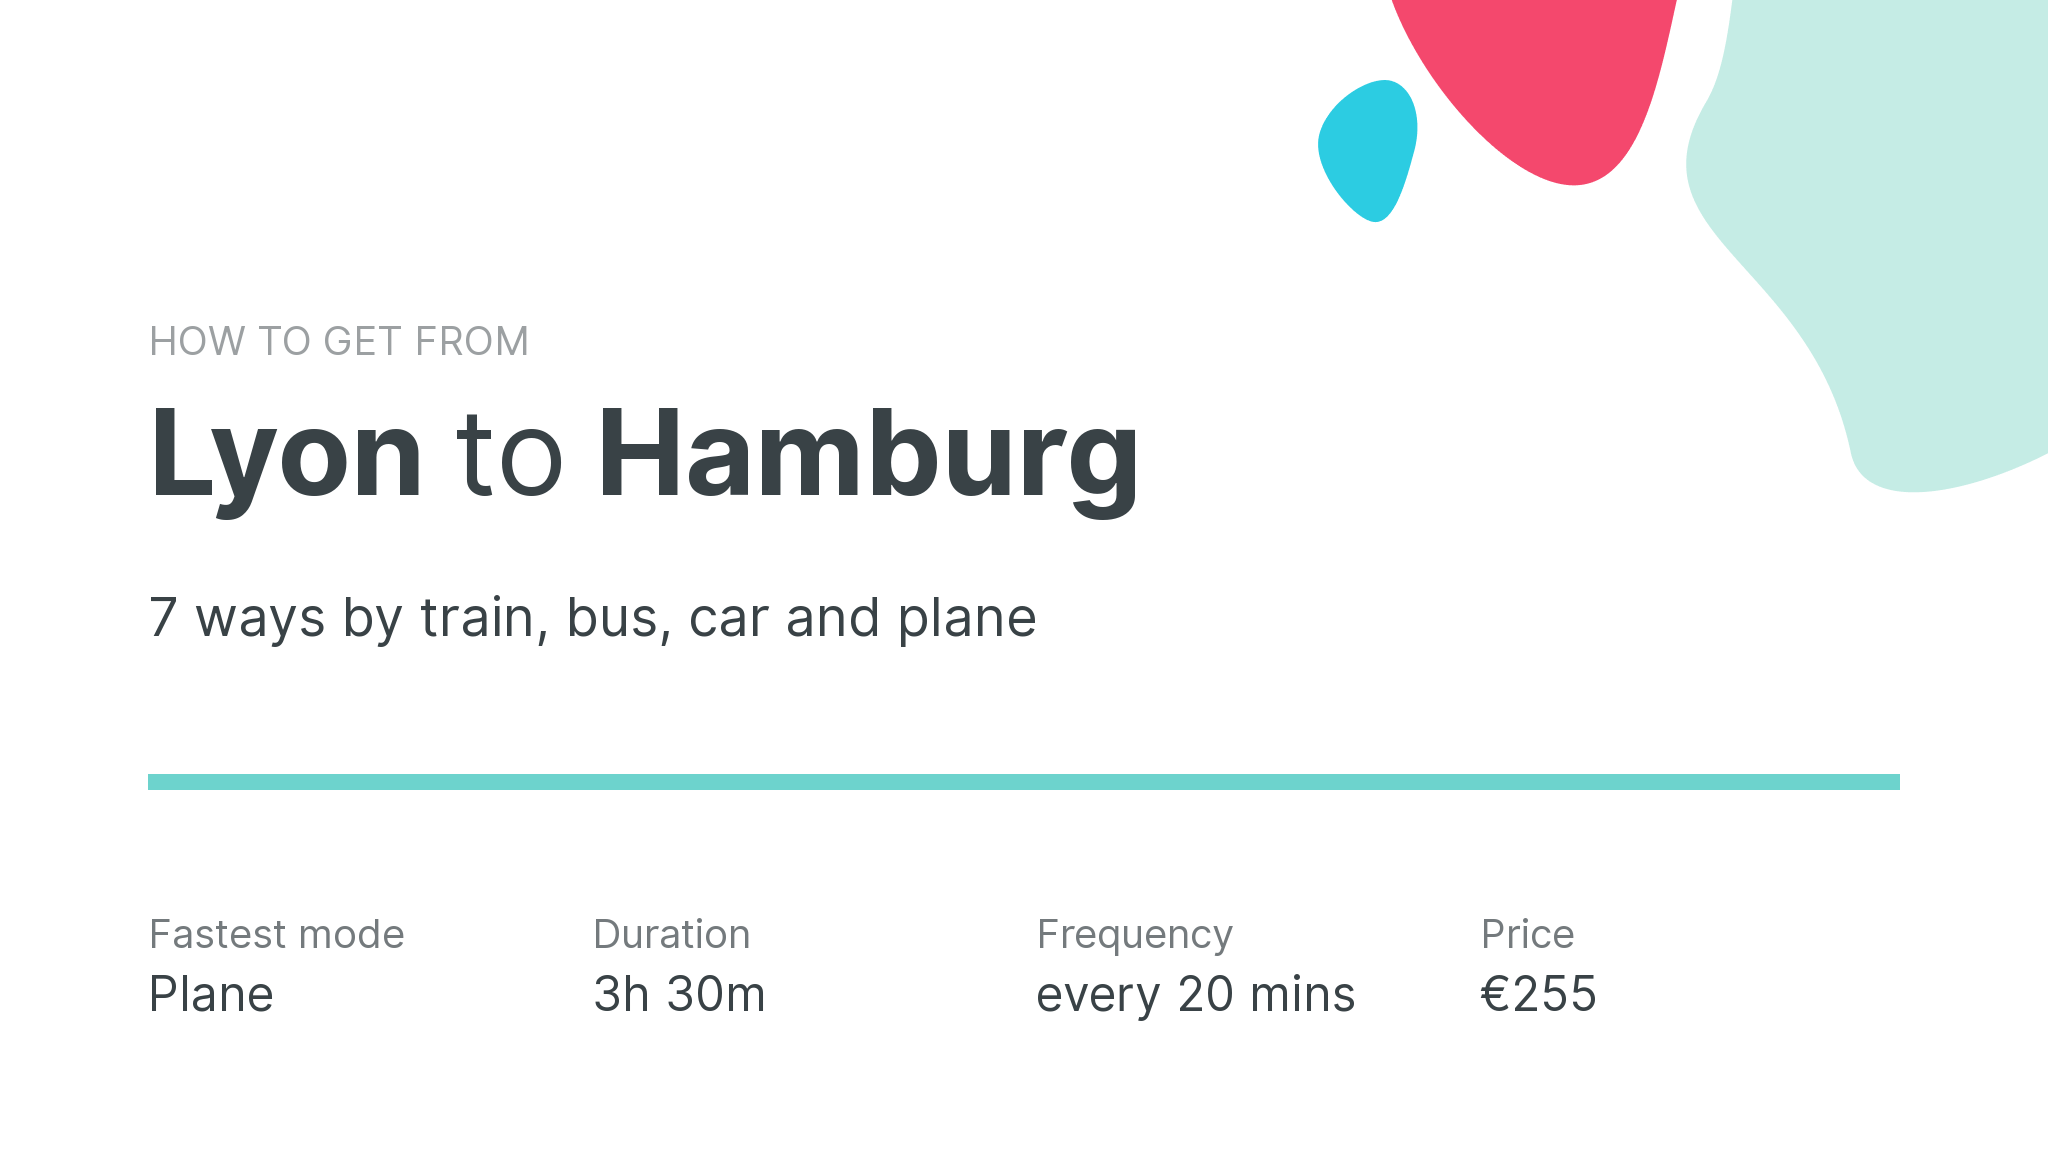 How do I get from Lyon to Hamburg